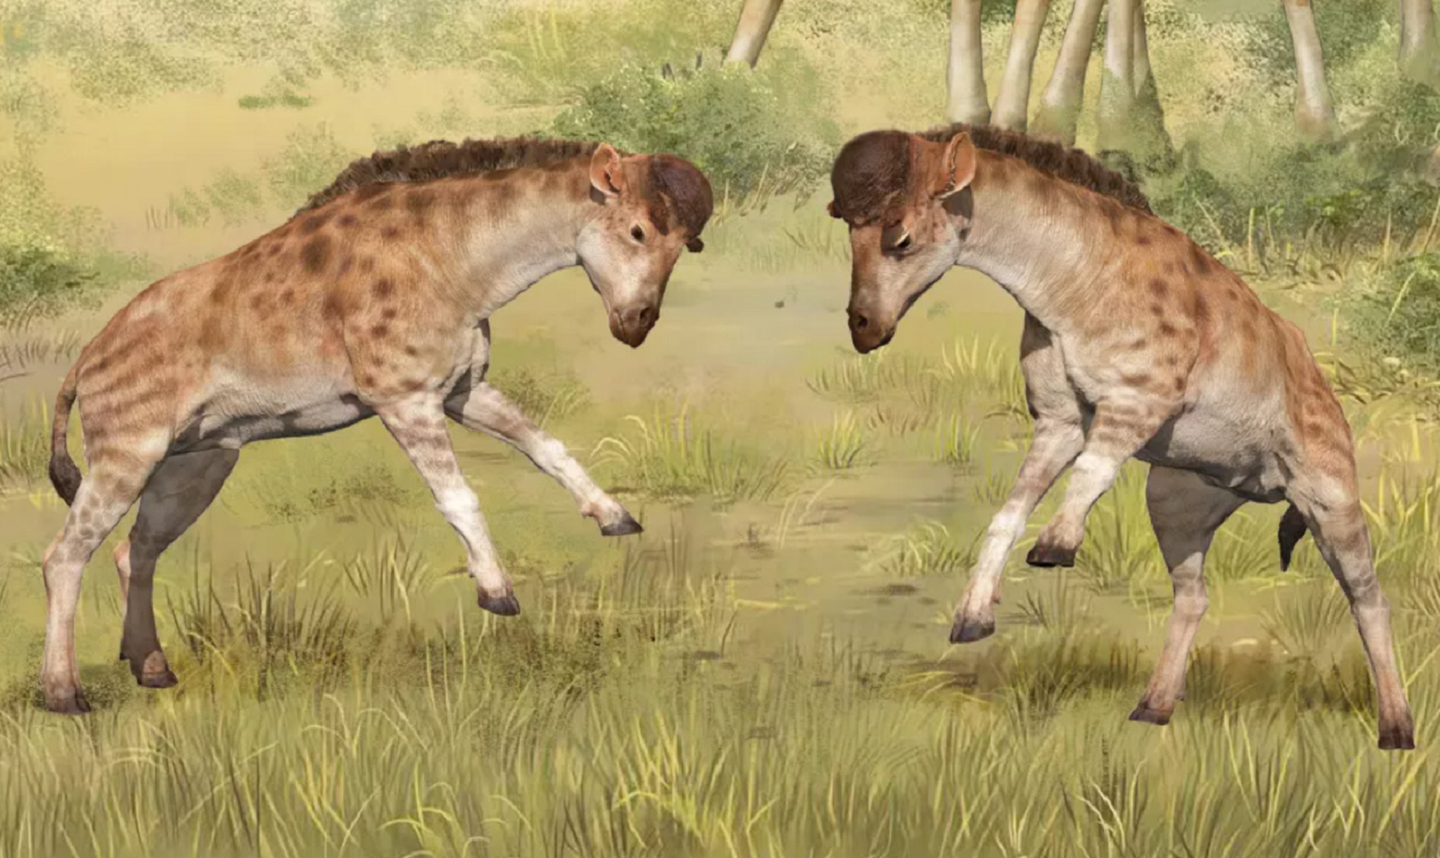 Fossils of a giraffe ancestor with short necks headbutting each other in a grassland in an artist's reimagining